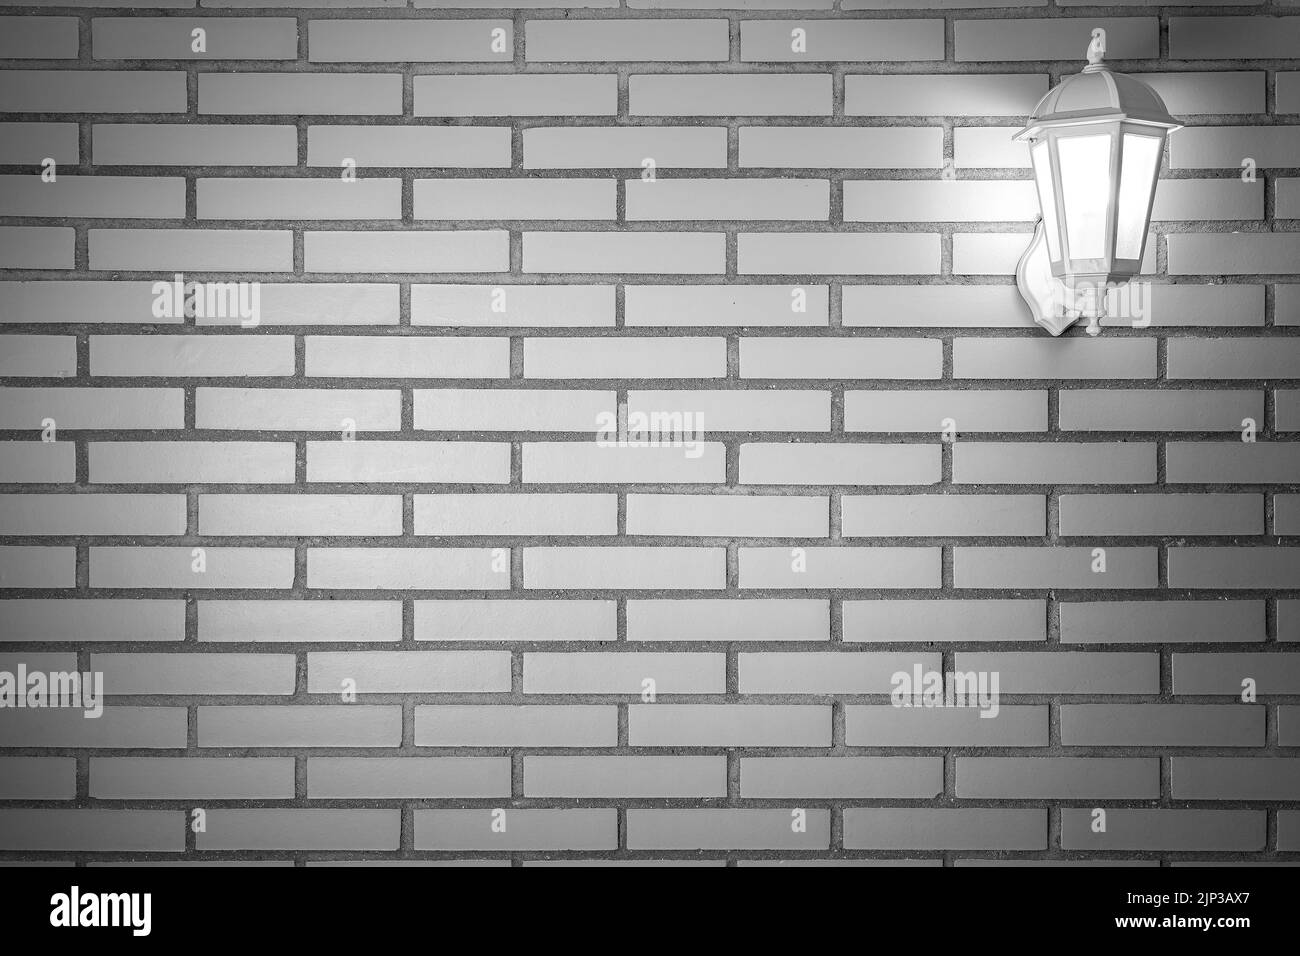 Fond de texture de mur de brique claire avec lanterne blanche et lumière allumée. Copier l'espace pour le texte. Espagne. Banque D'Images